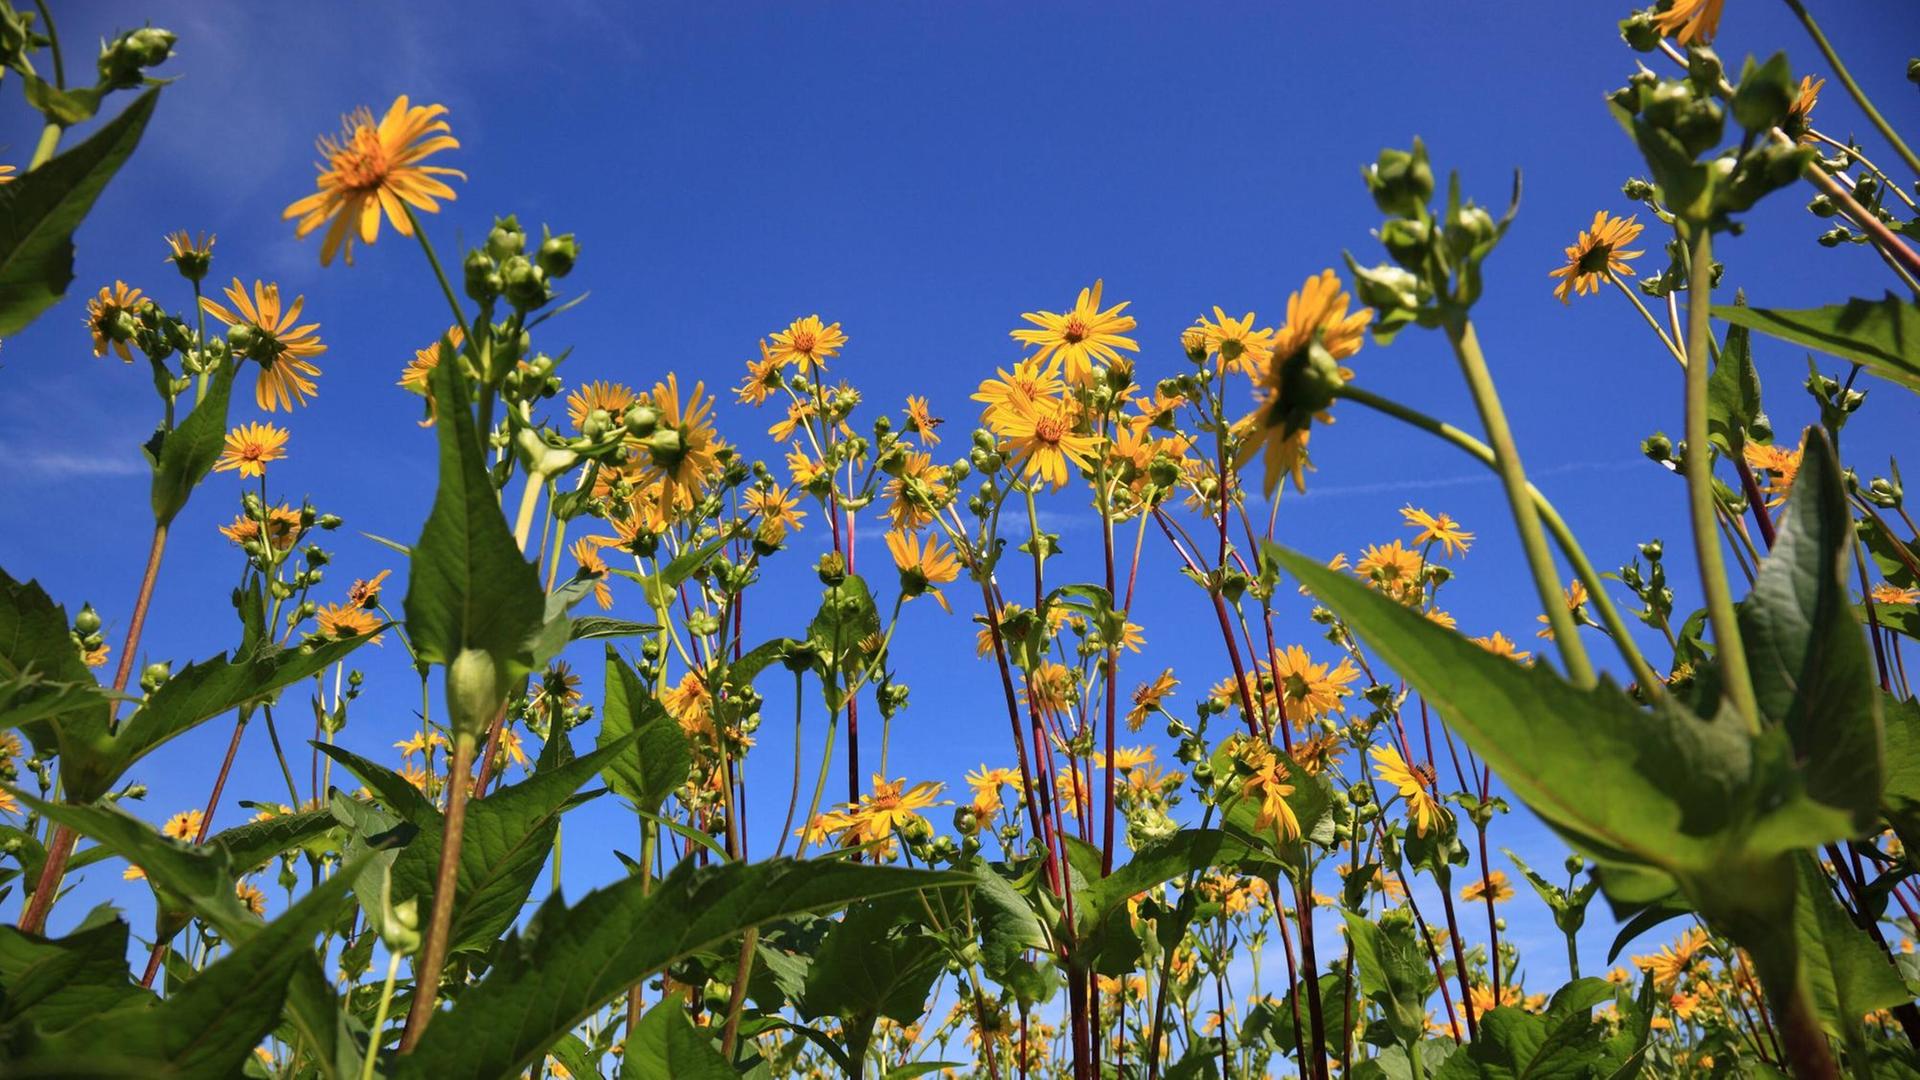 Die Energiepflanze Durchwachsene Silphie (Silphium perfoliatum), auch Becherpflanze, genannt: gelbe Blüten vor blauem Himmel.